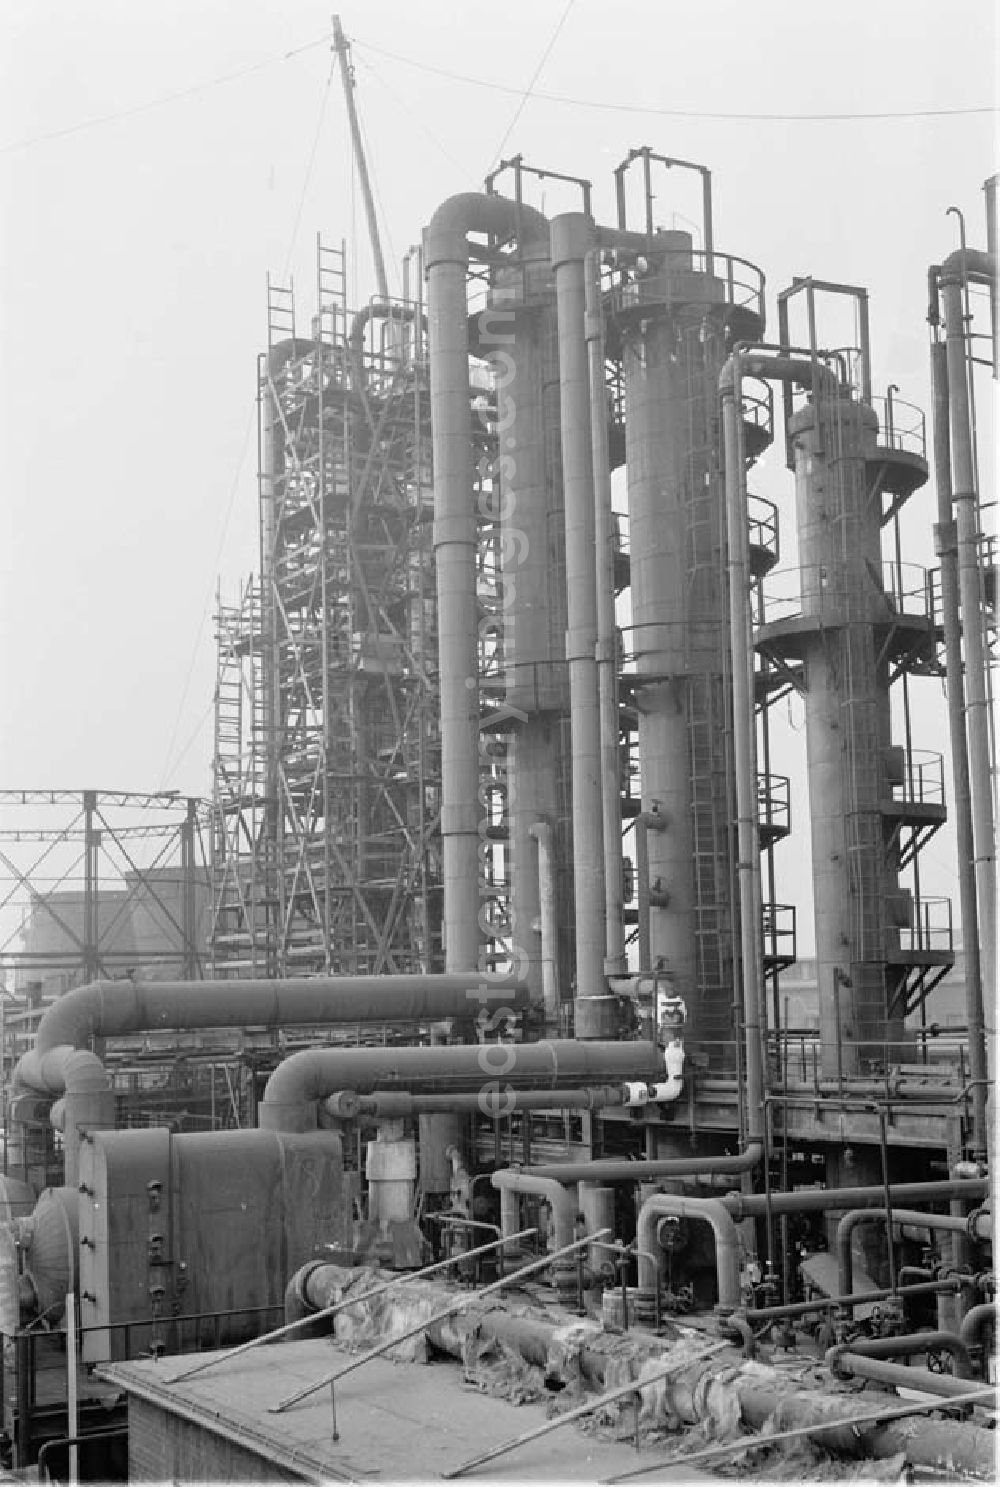 GDR image archive: Lützkendorf - Blick auf die Raffinerie VEB Mineralölwerk Lützkendorf. Schornsteine in Hintergrund in Baugerüst gehüllt.